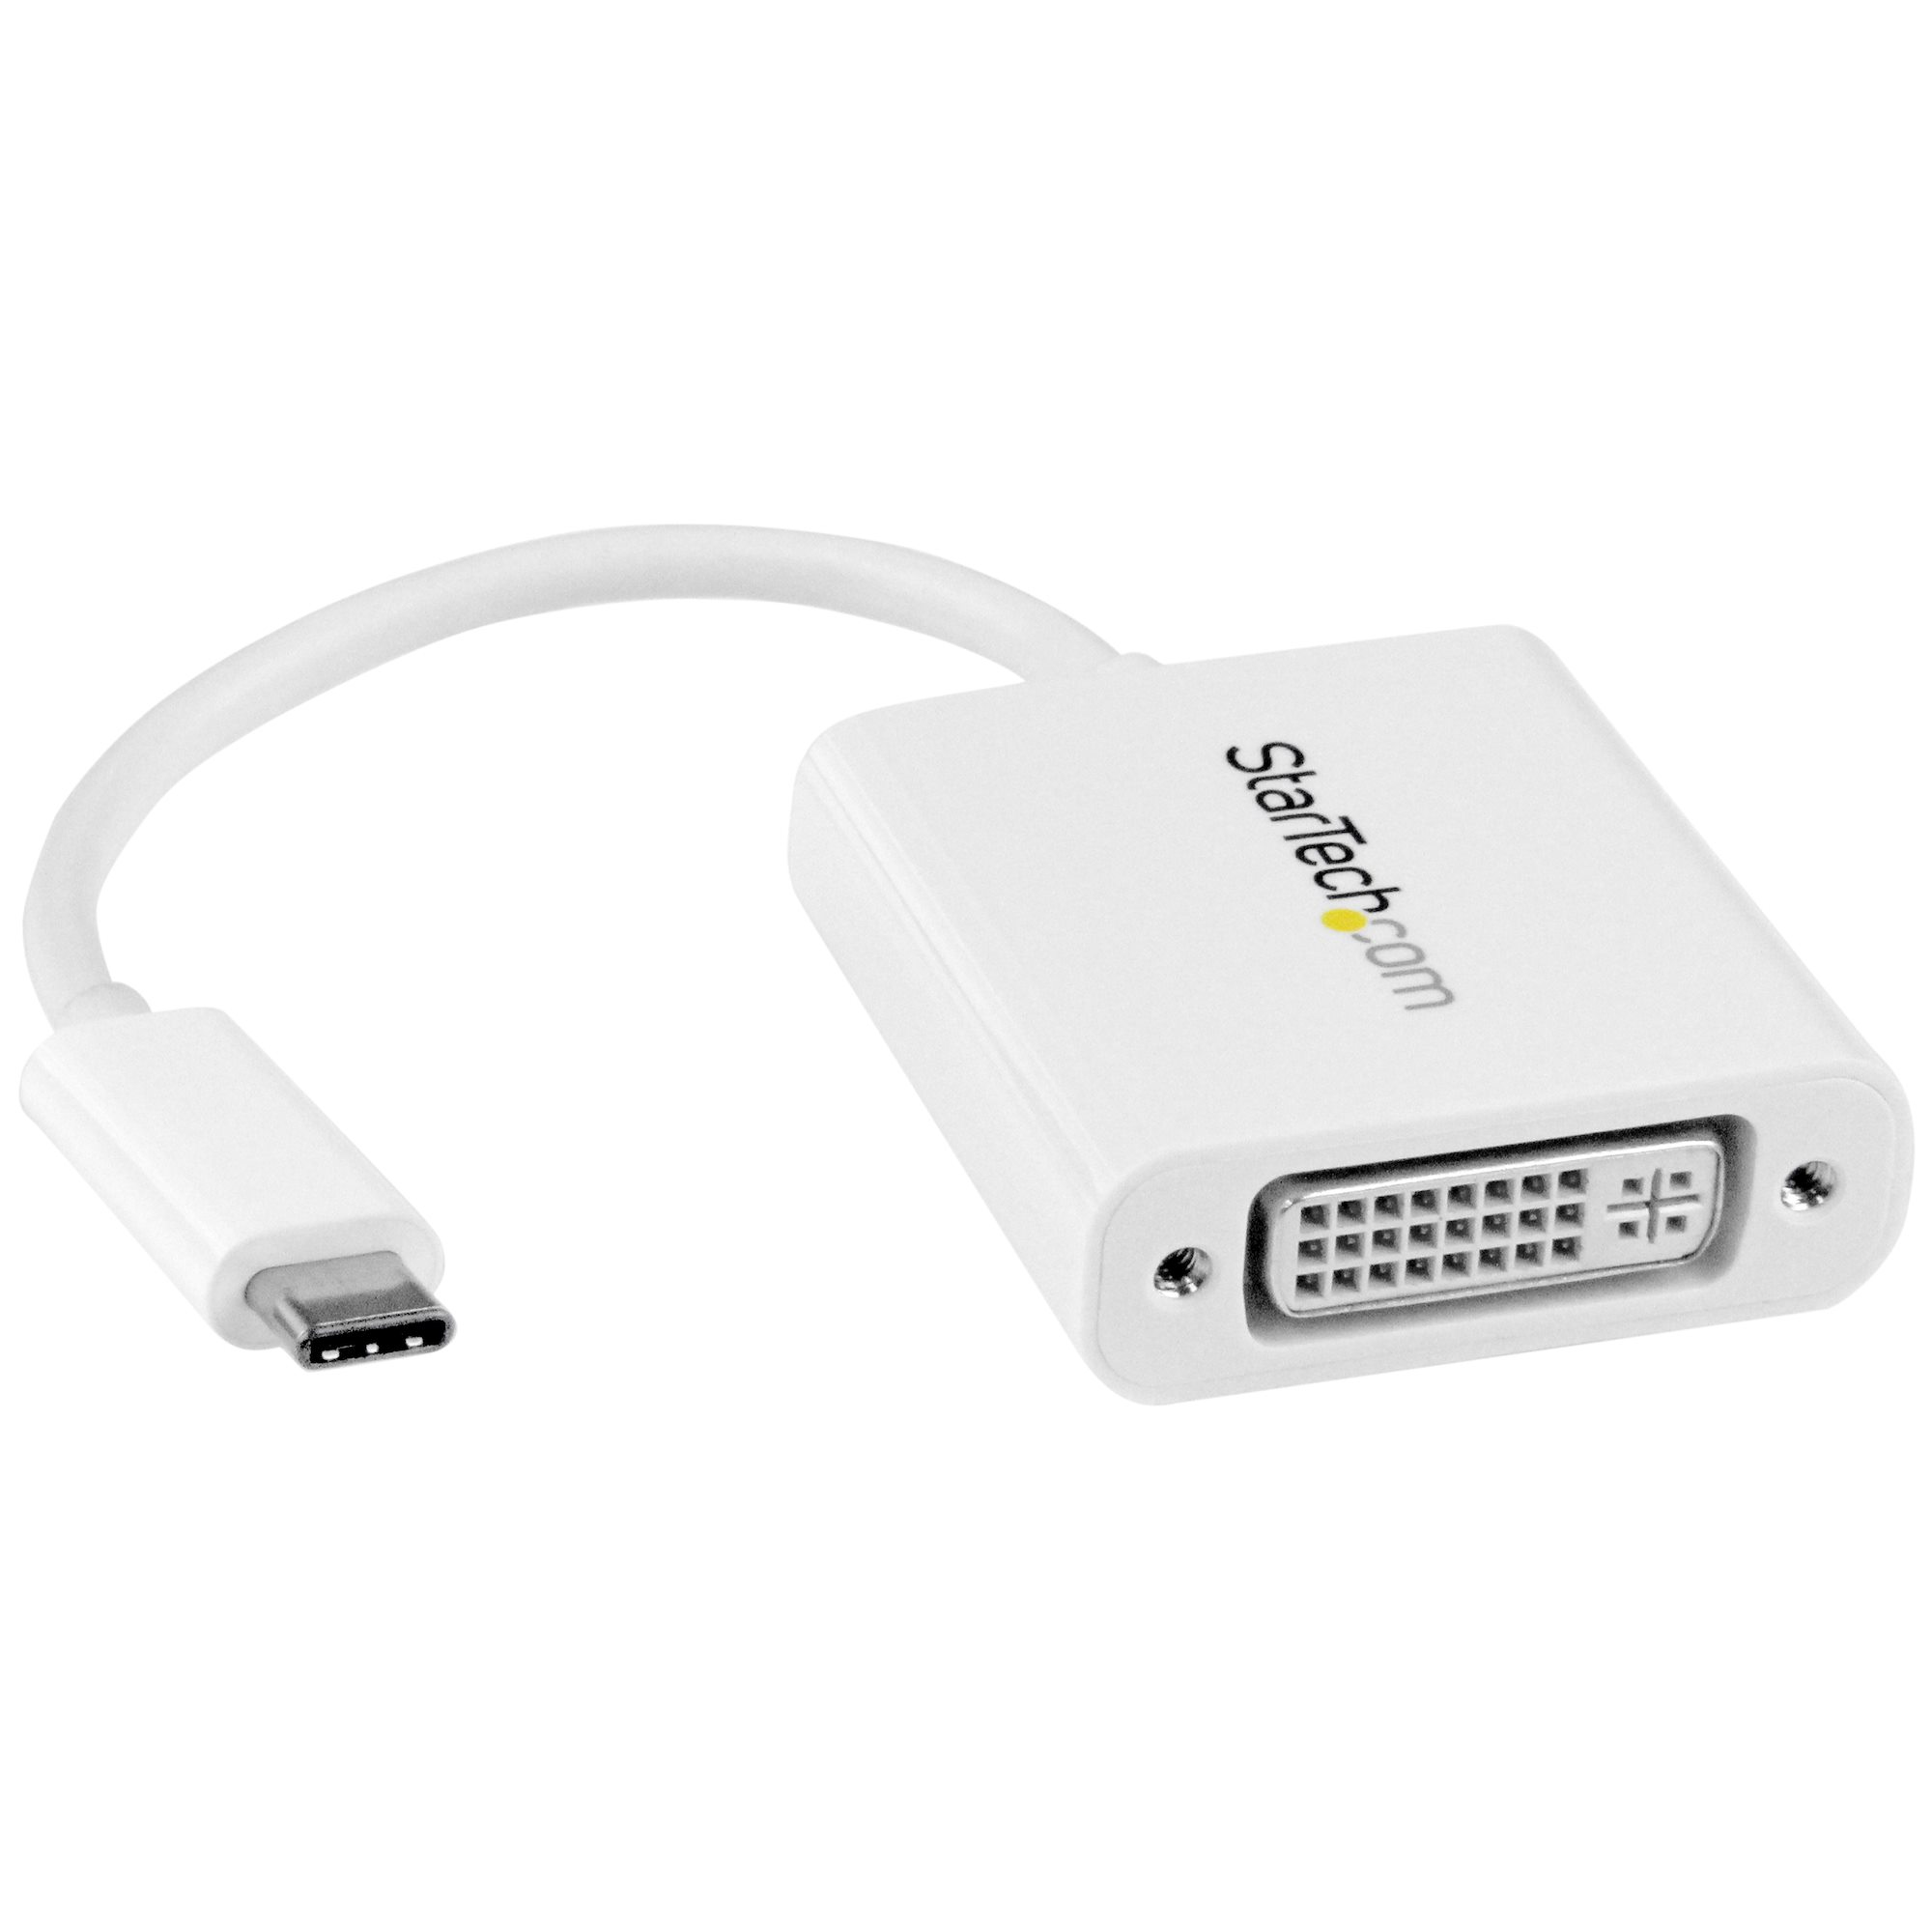 StarTech.com USB-C auf DVI Adapter - USB Type-C DVI Konverter für MacBook, Chromebook, Dell XPS oder andere USB-C Geräte